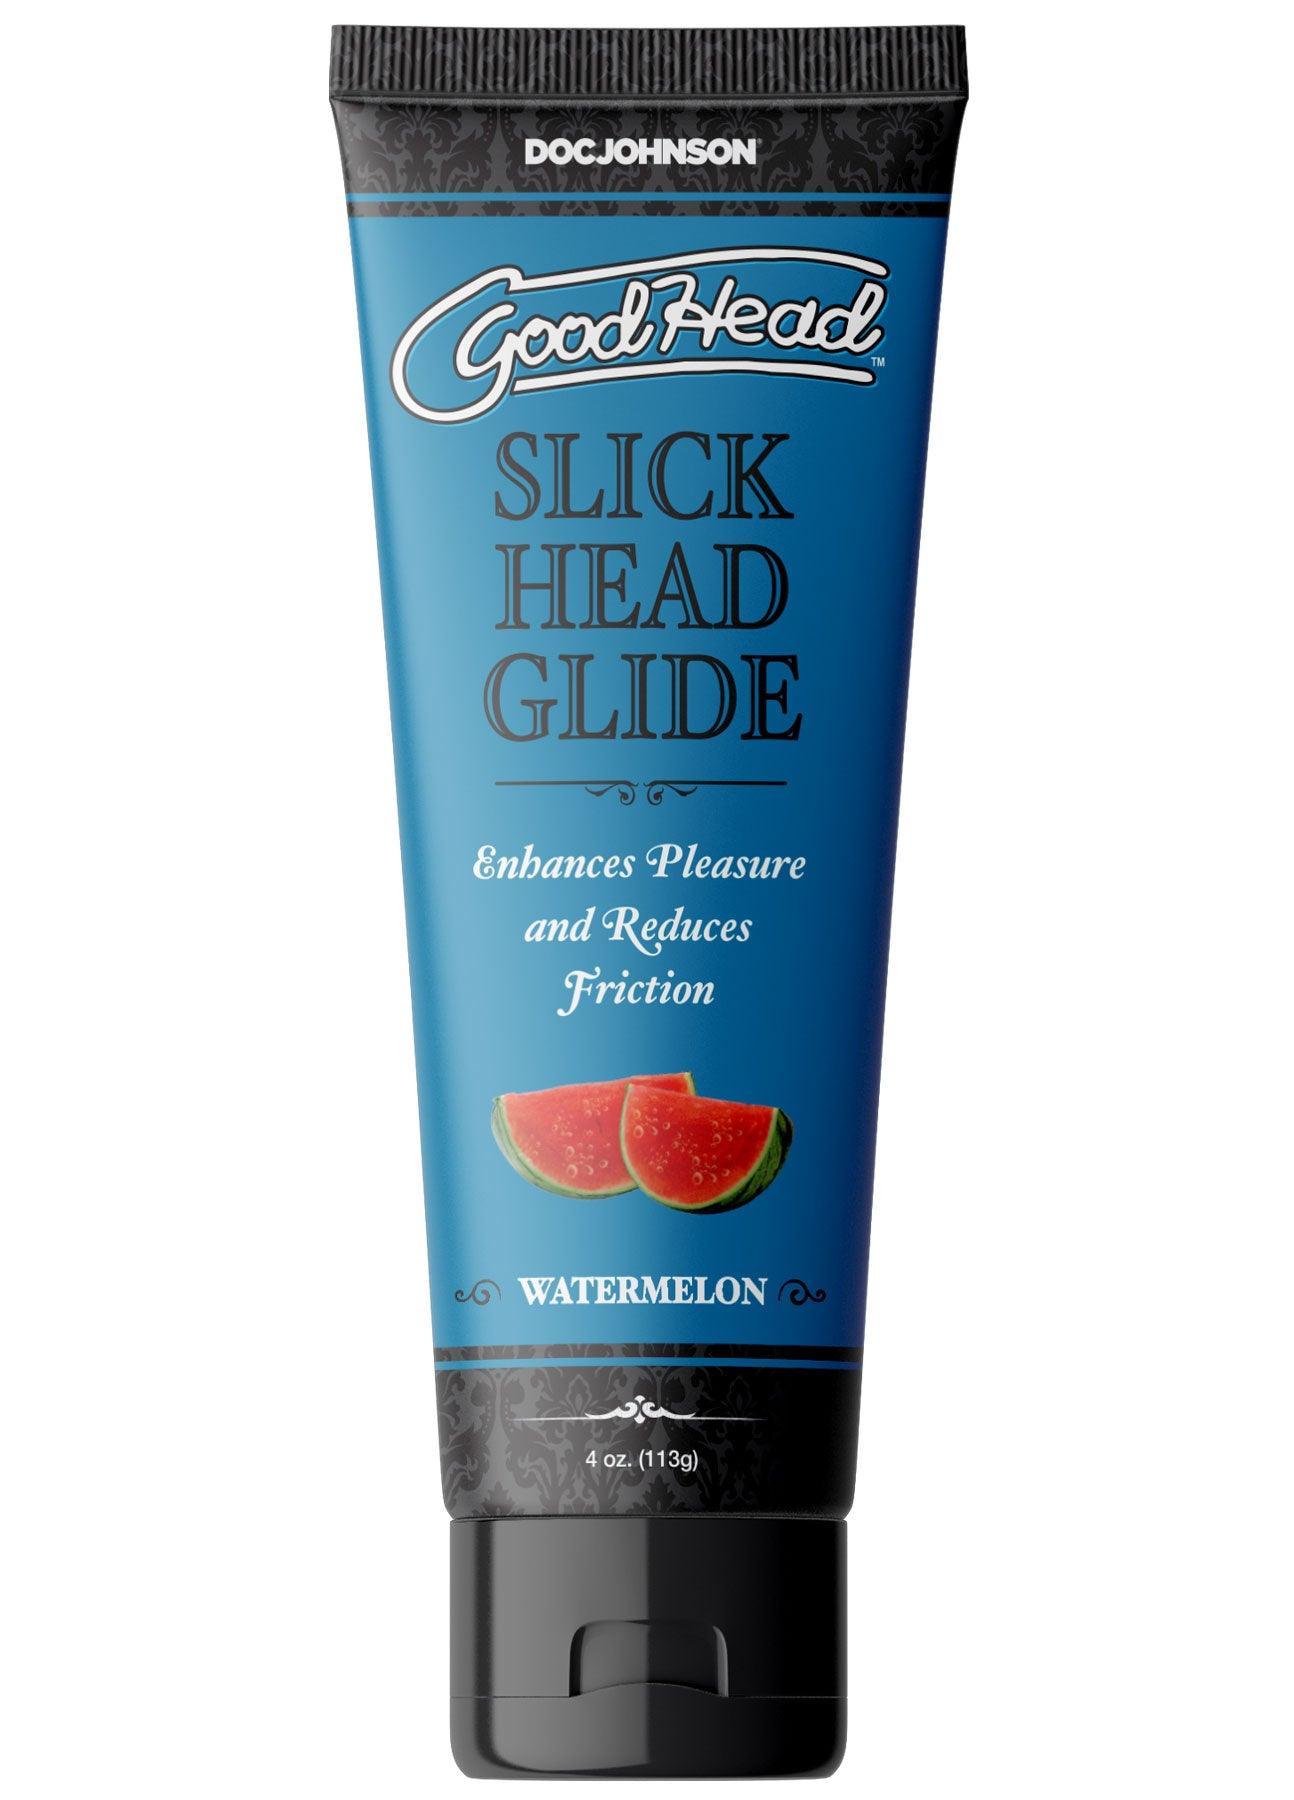 Goodhead - Slick Head Glide - Watermelon - 4 Oz. - My Sex Toy Hub